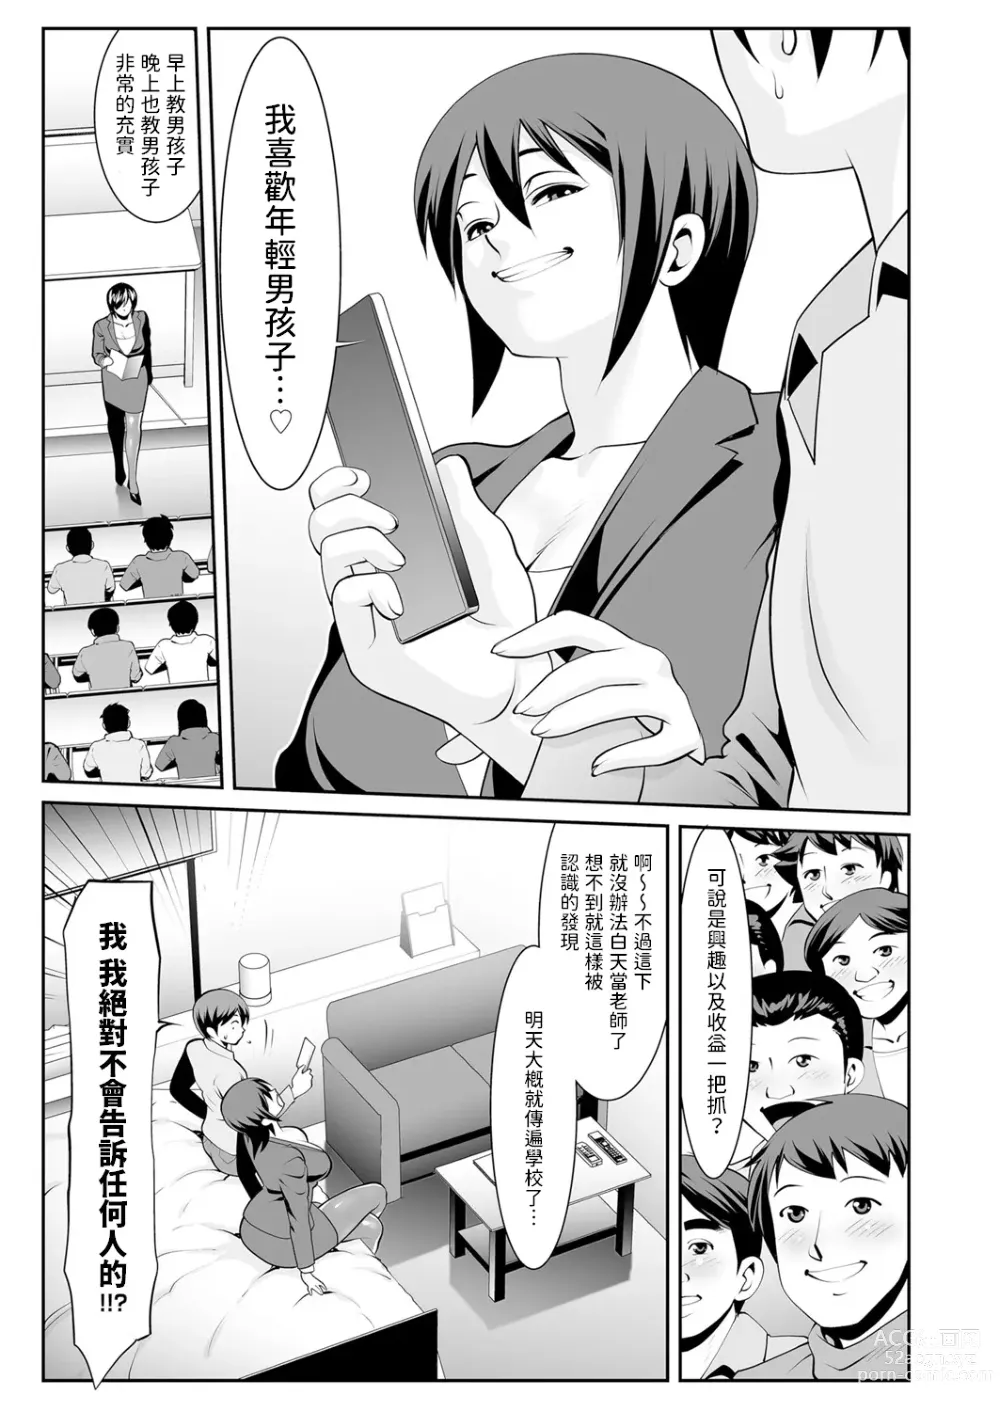 Page 3 of manga Sensei no Hiru to Yoru